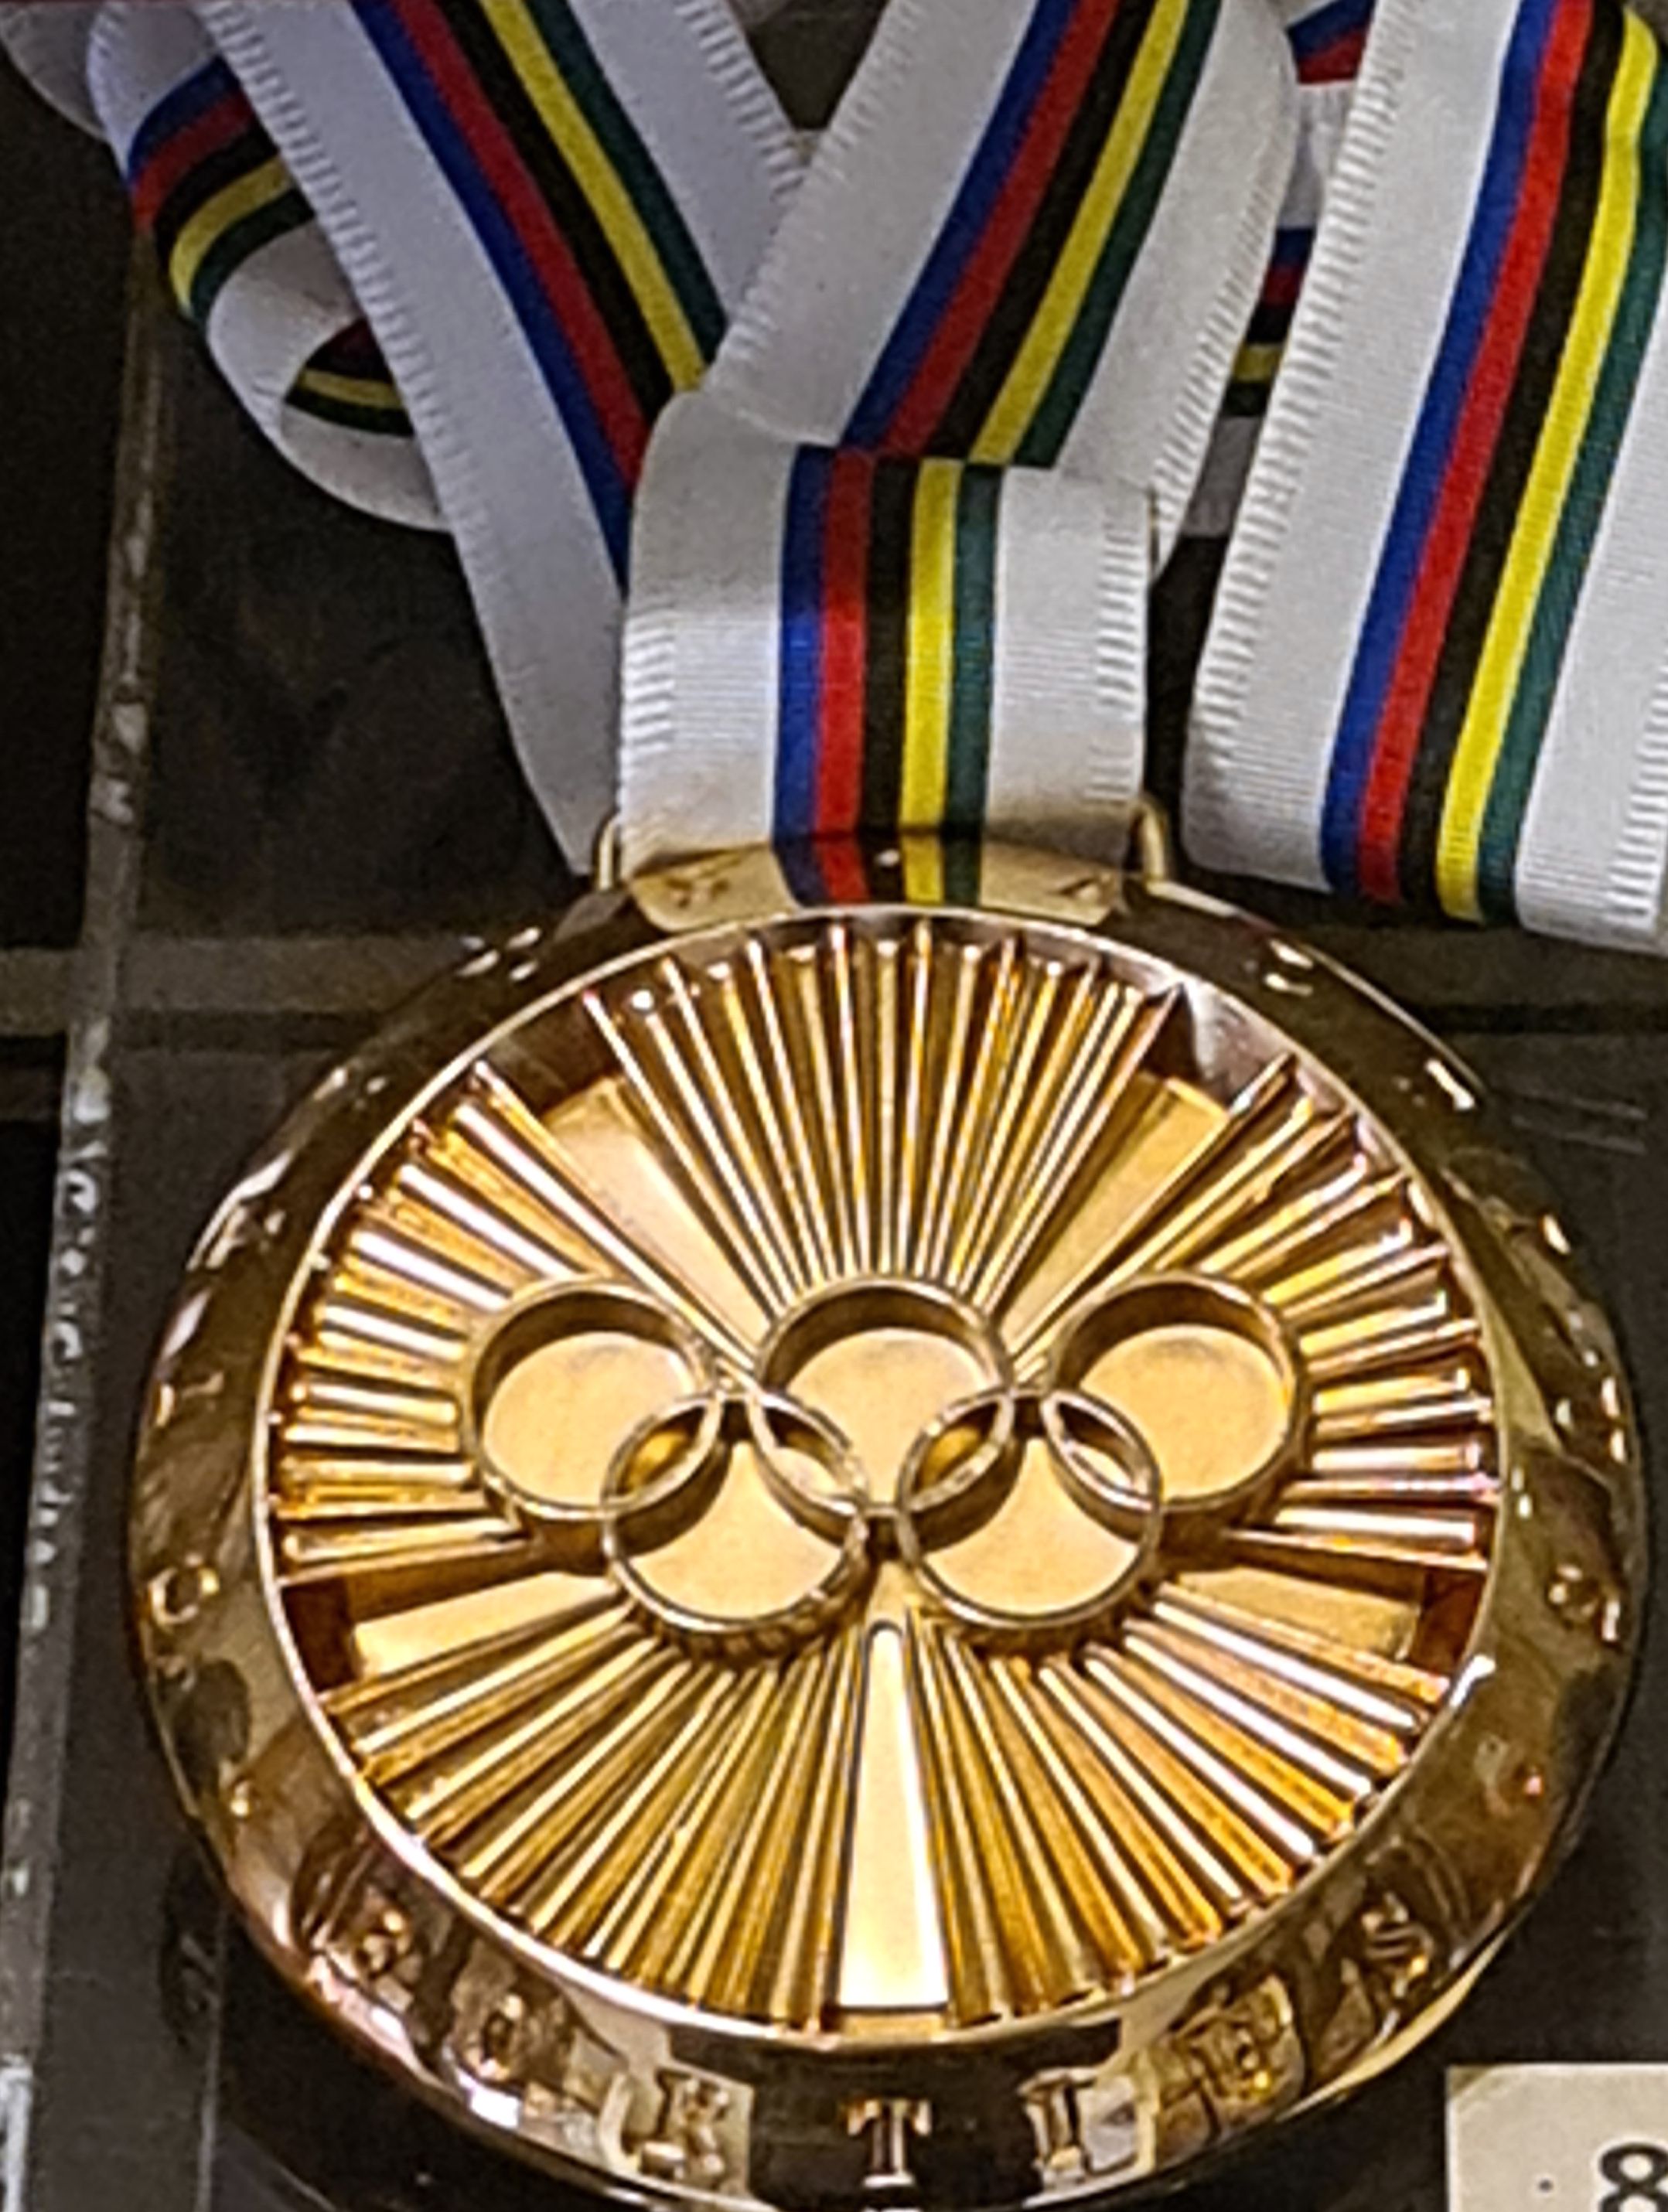 Pierre de Coubertin medal